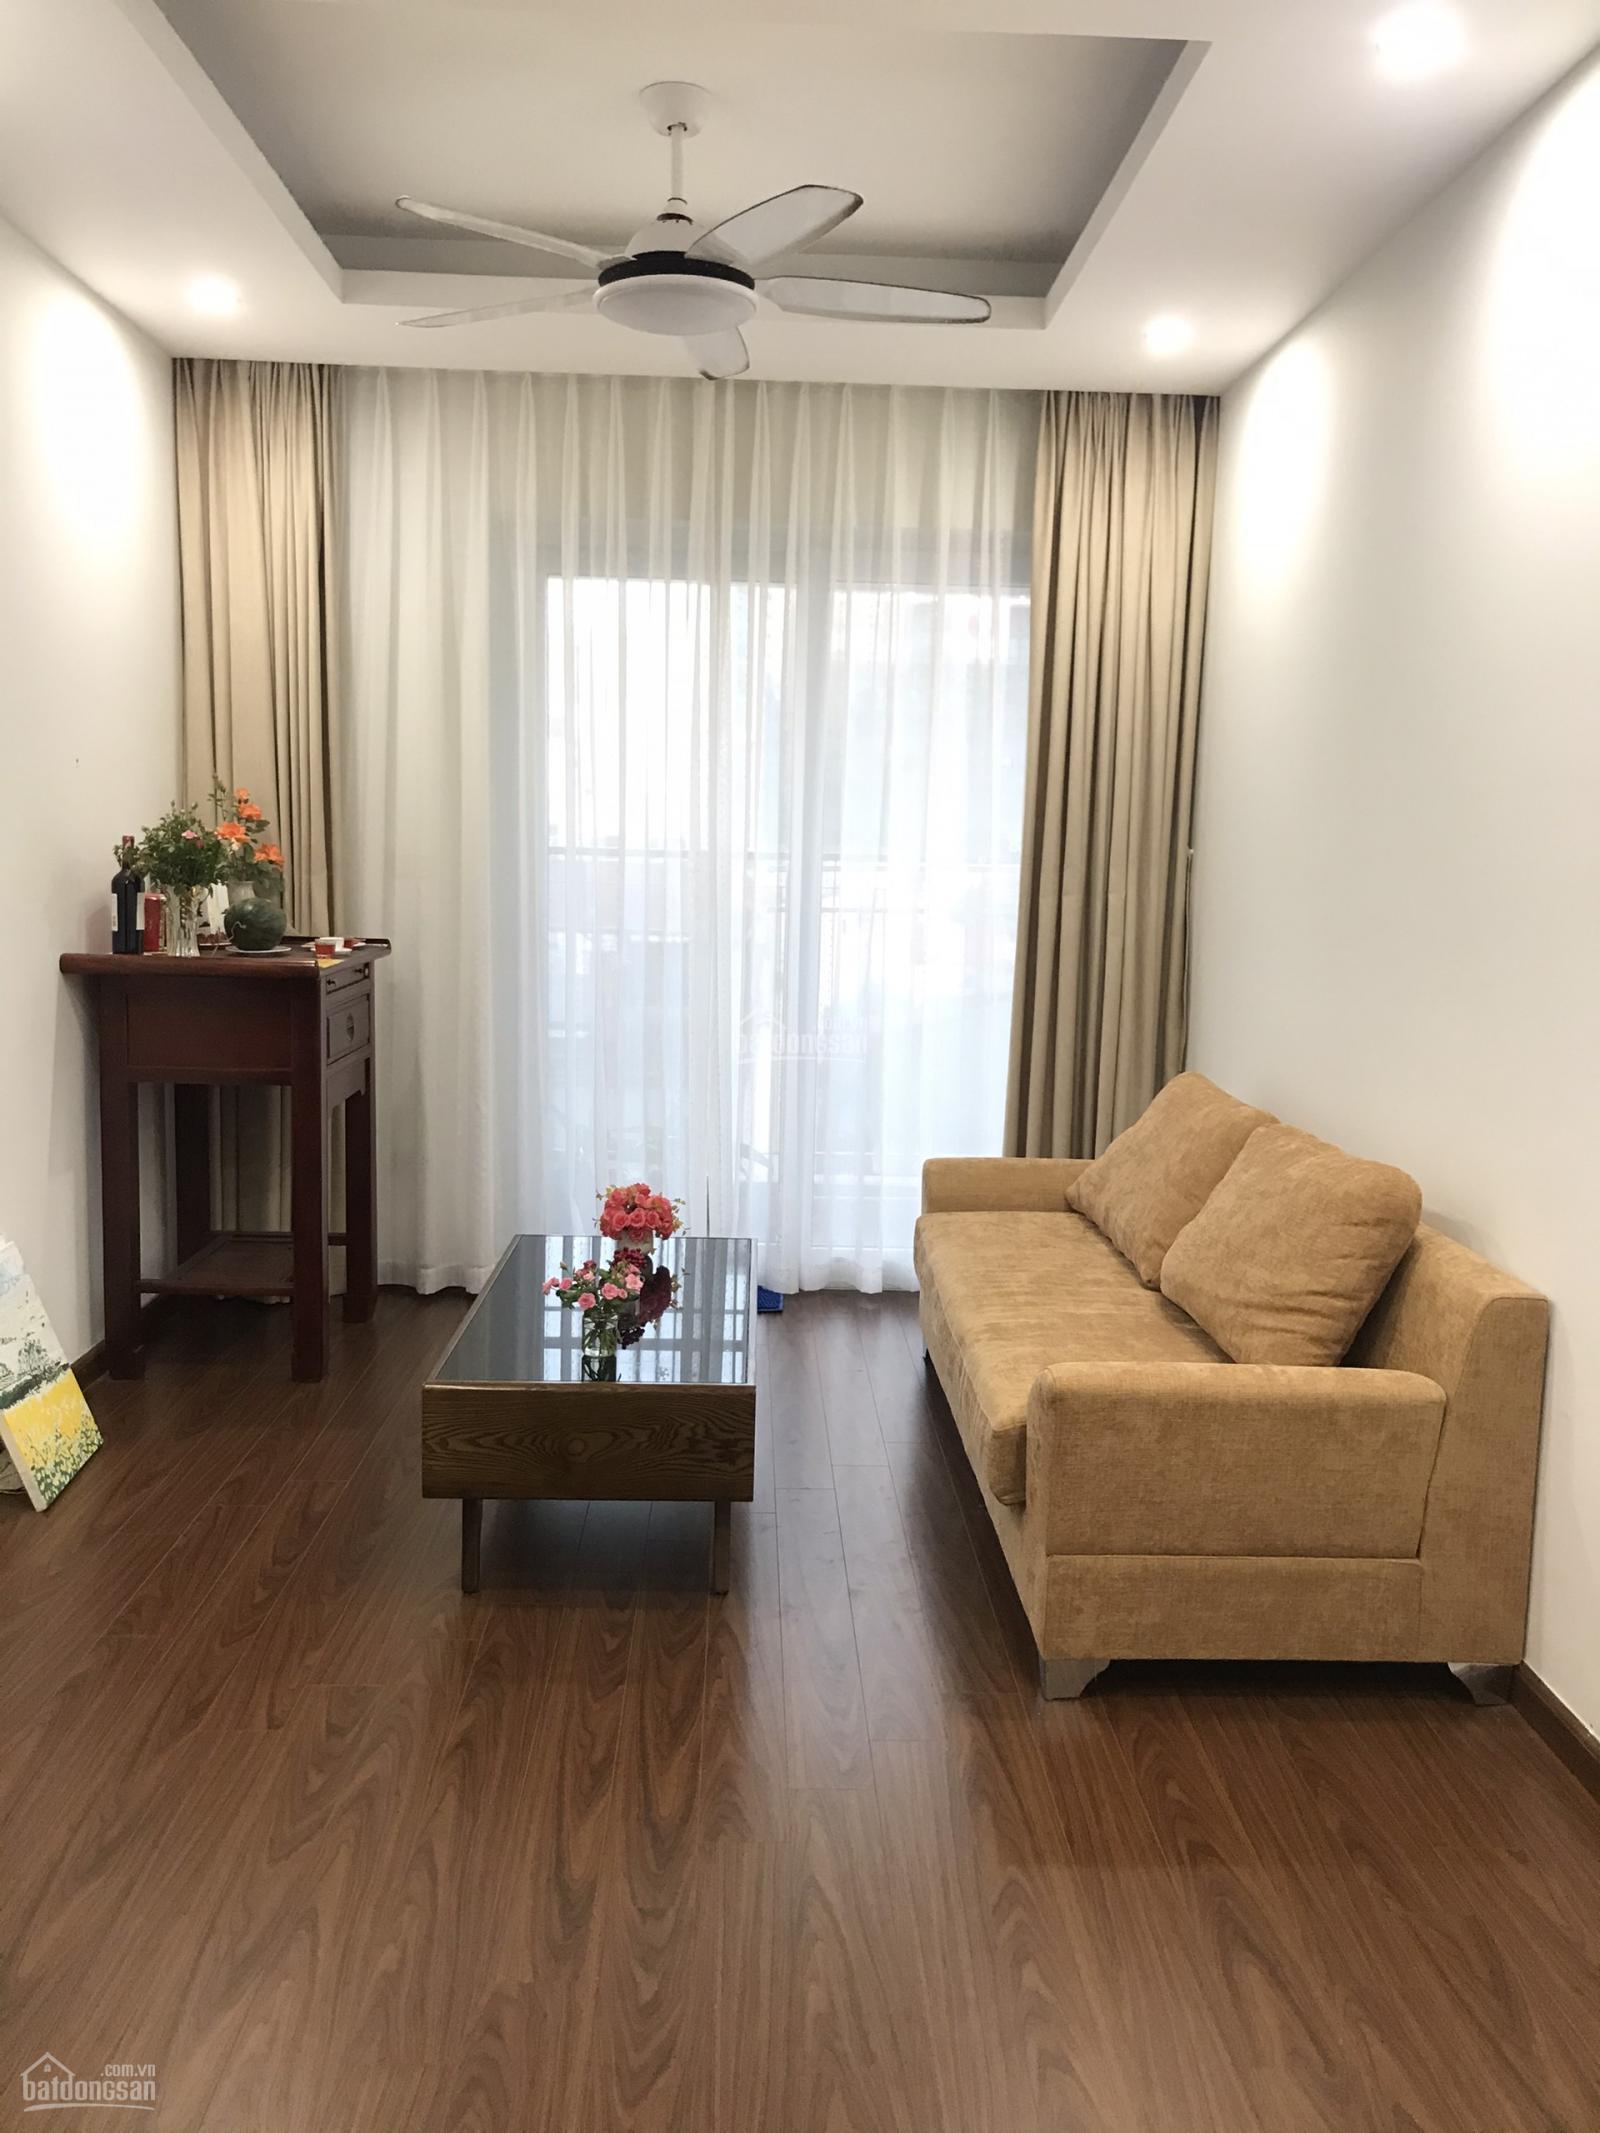 Cho thuê chung cư 90 Nguyễn Tuân, căn hộ đẹp giá rẻ 2pn full nội thất.